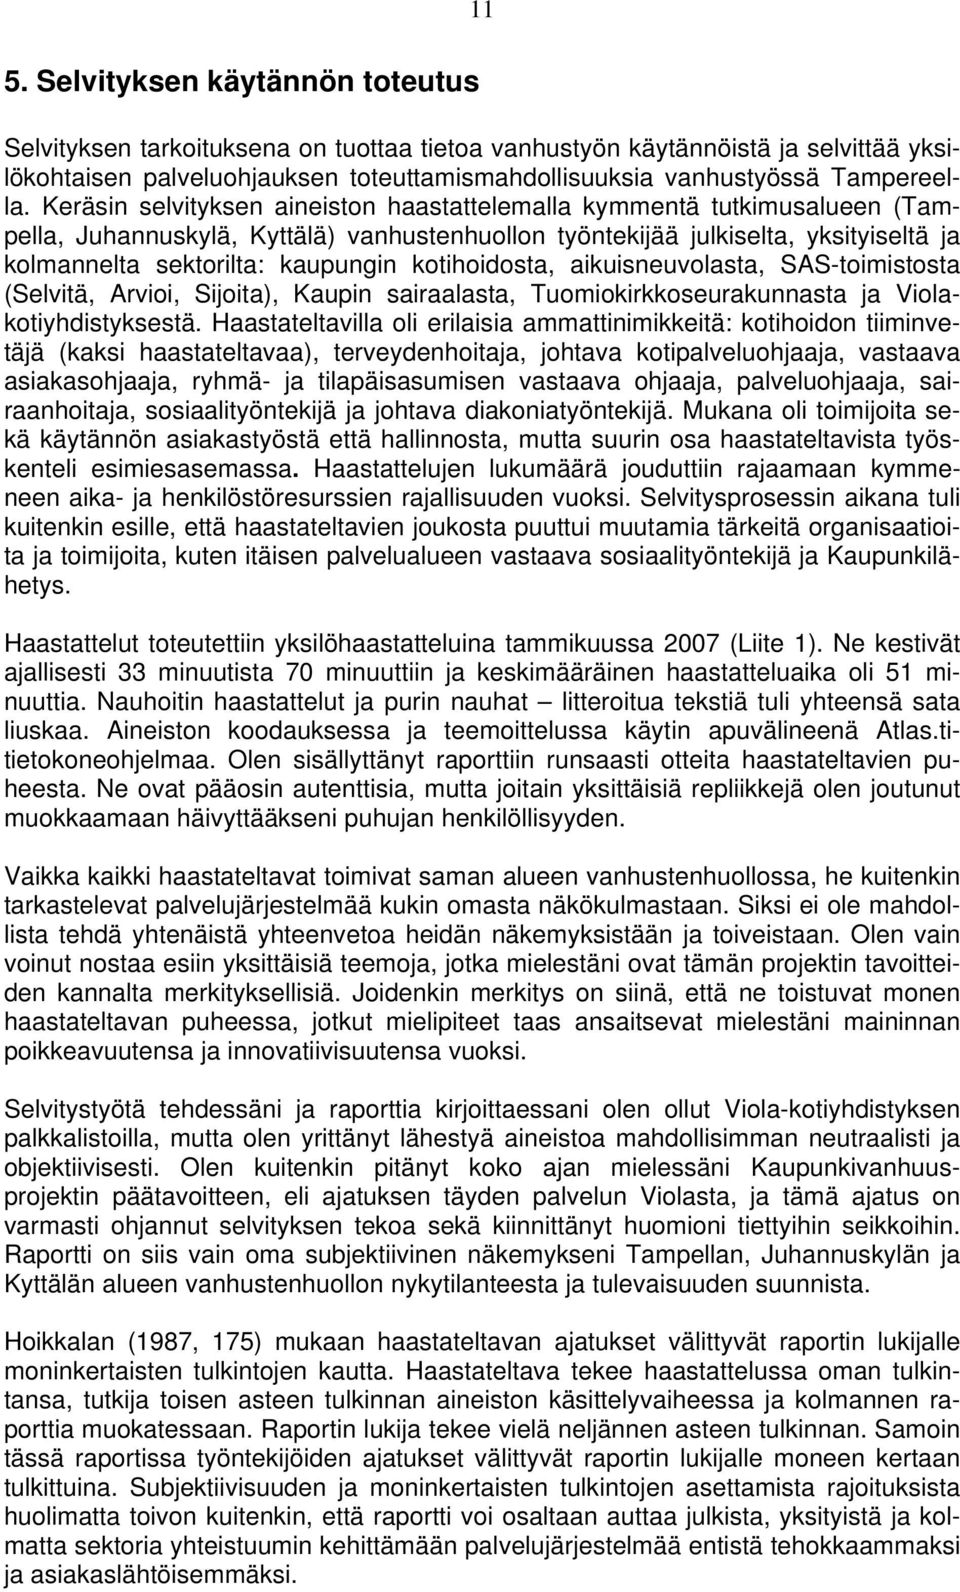 Keräsin selvityksen aineiston haastattelemalla kymmentä tutkimusalueen (Tampella, Juhannuskylä, Kyttälä) vanhustenhuollon työntekijää julkiselta, yksityiseltä ja kolmannelta sektorilta: kaupungin